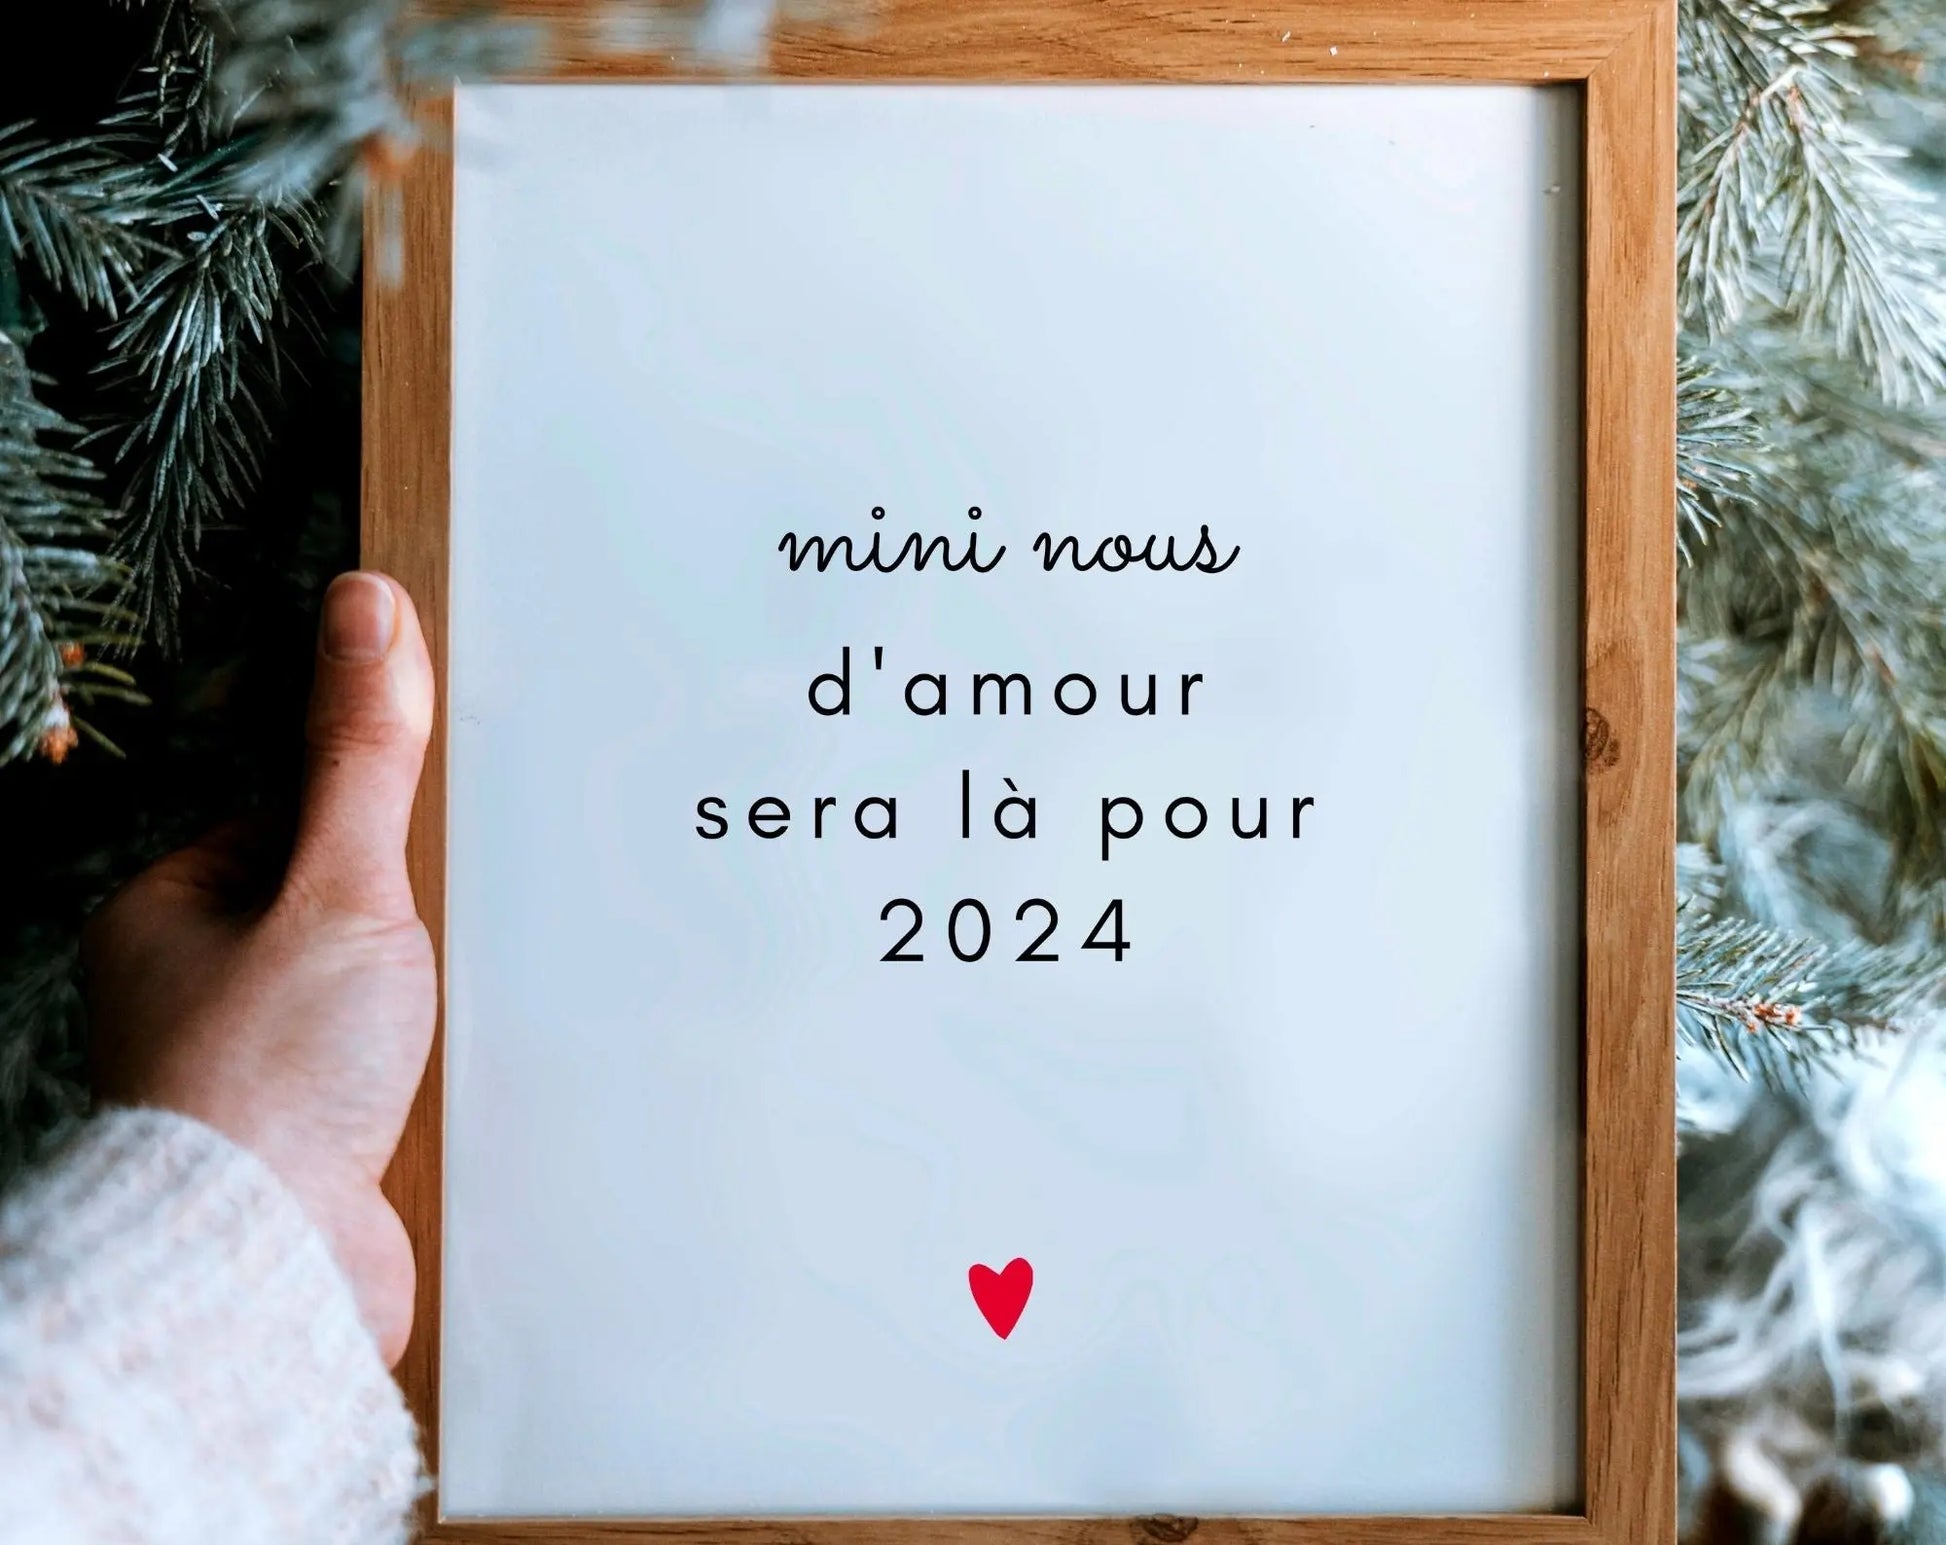 Mini nous d'amour sera là pour 2024 - Annonce originale grossesse FLTMfrance